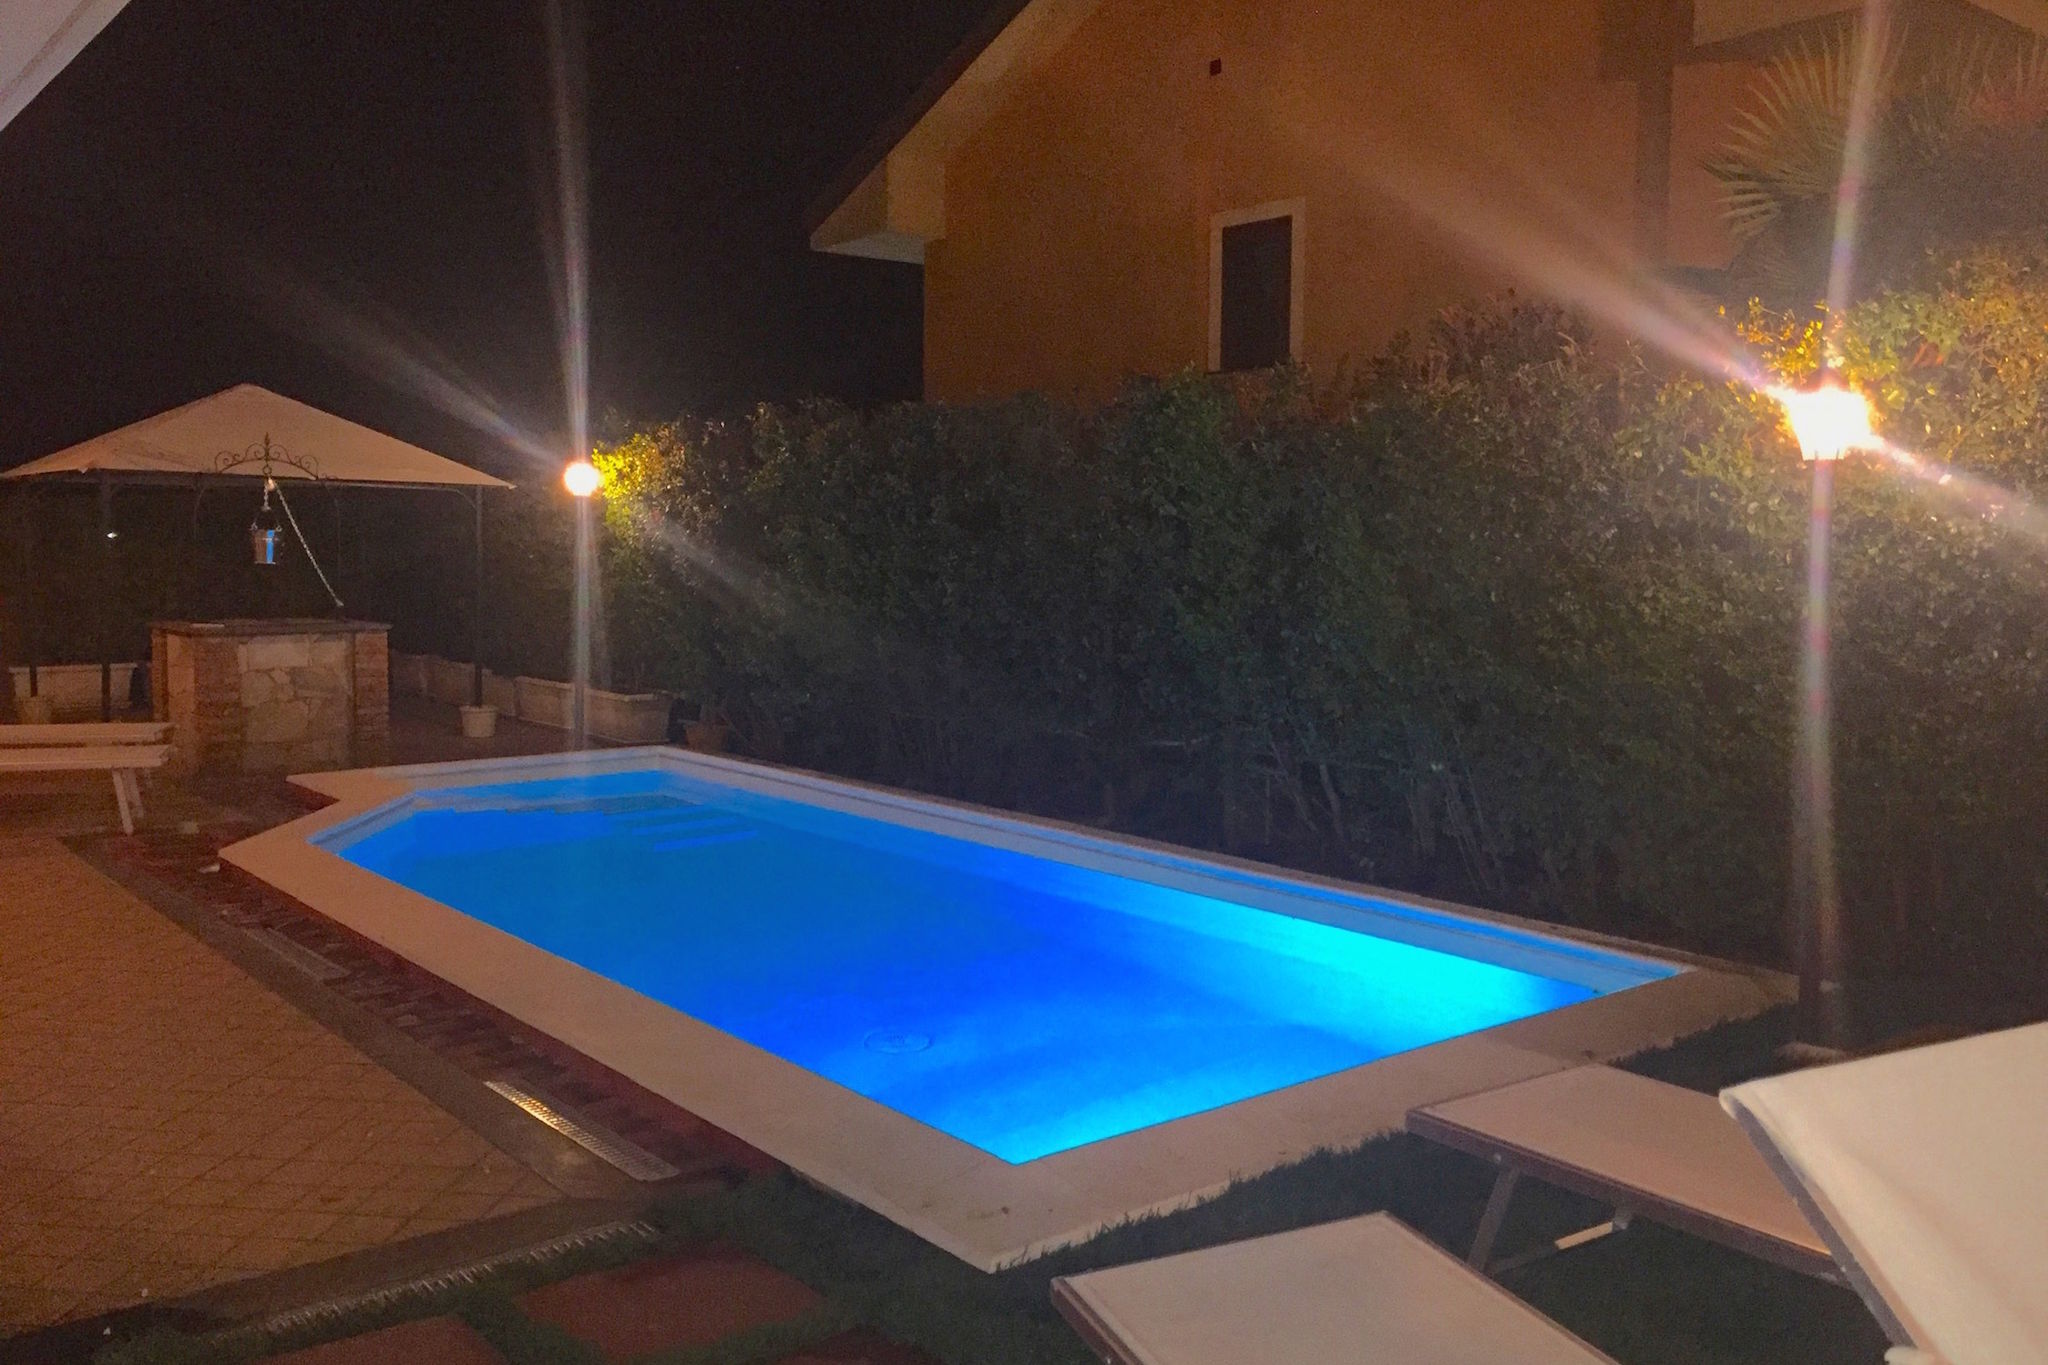 Villa avec piscine privée, située dans un quartier résidentiel au pied de l'Etna